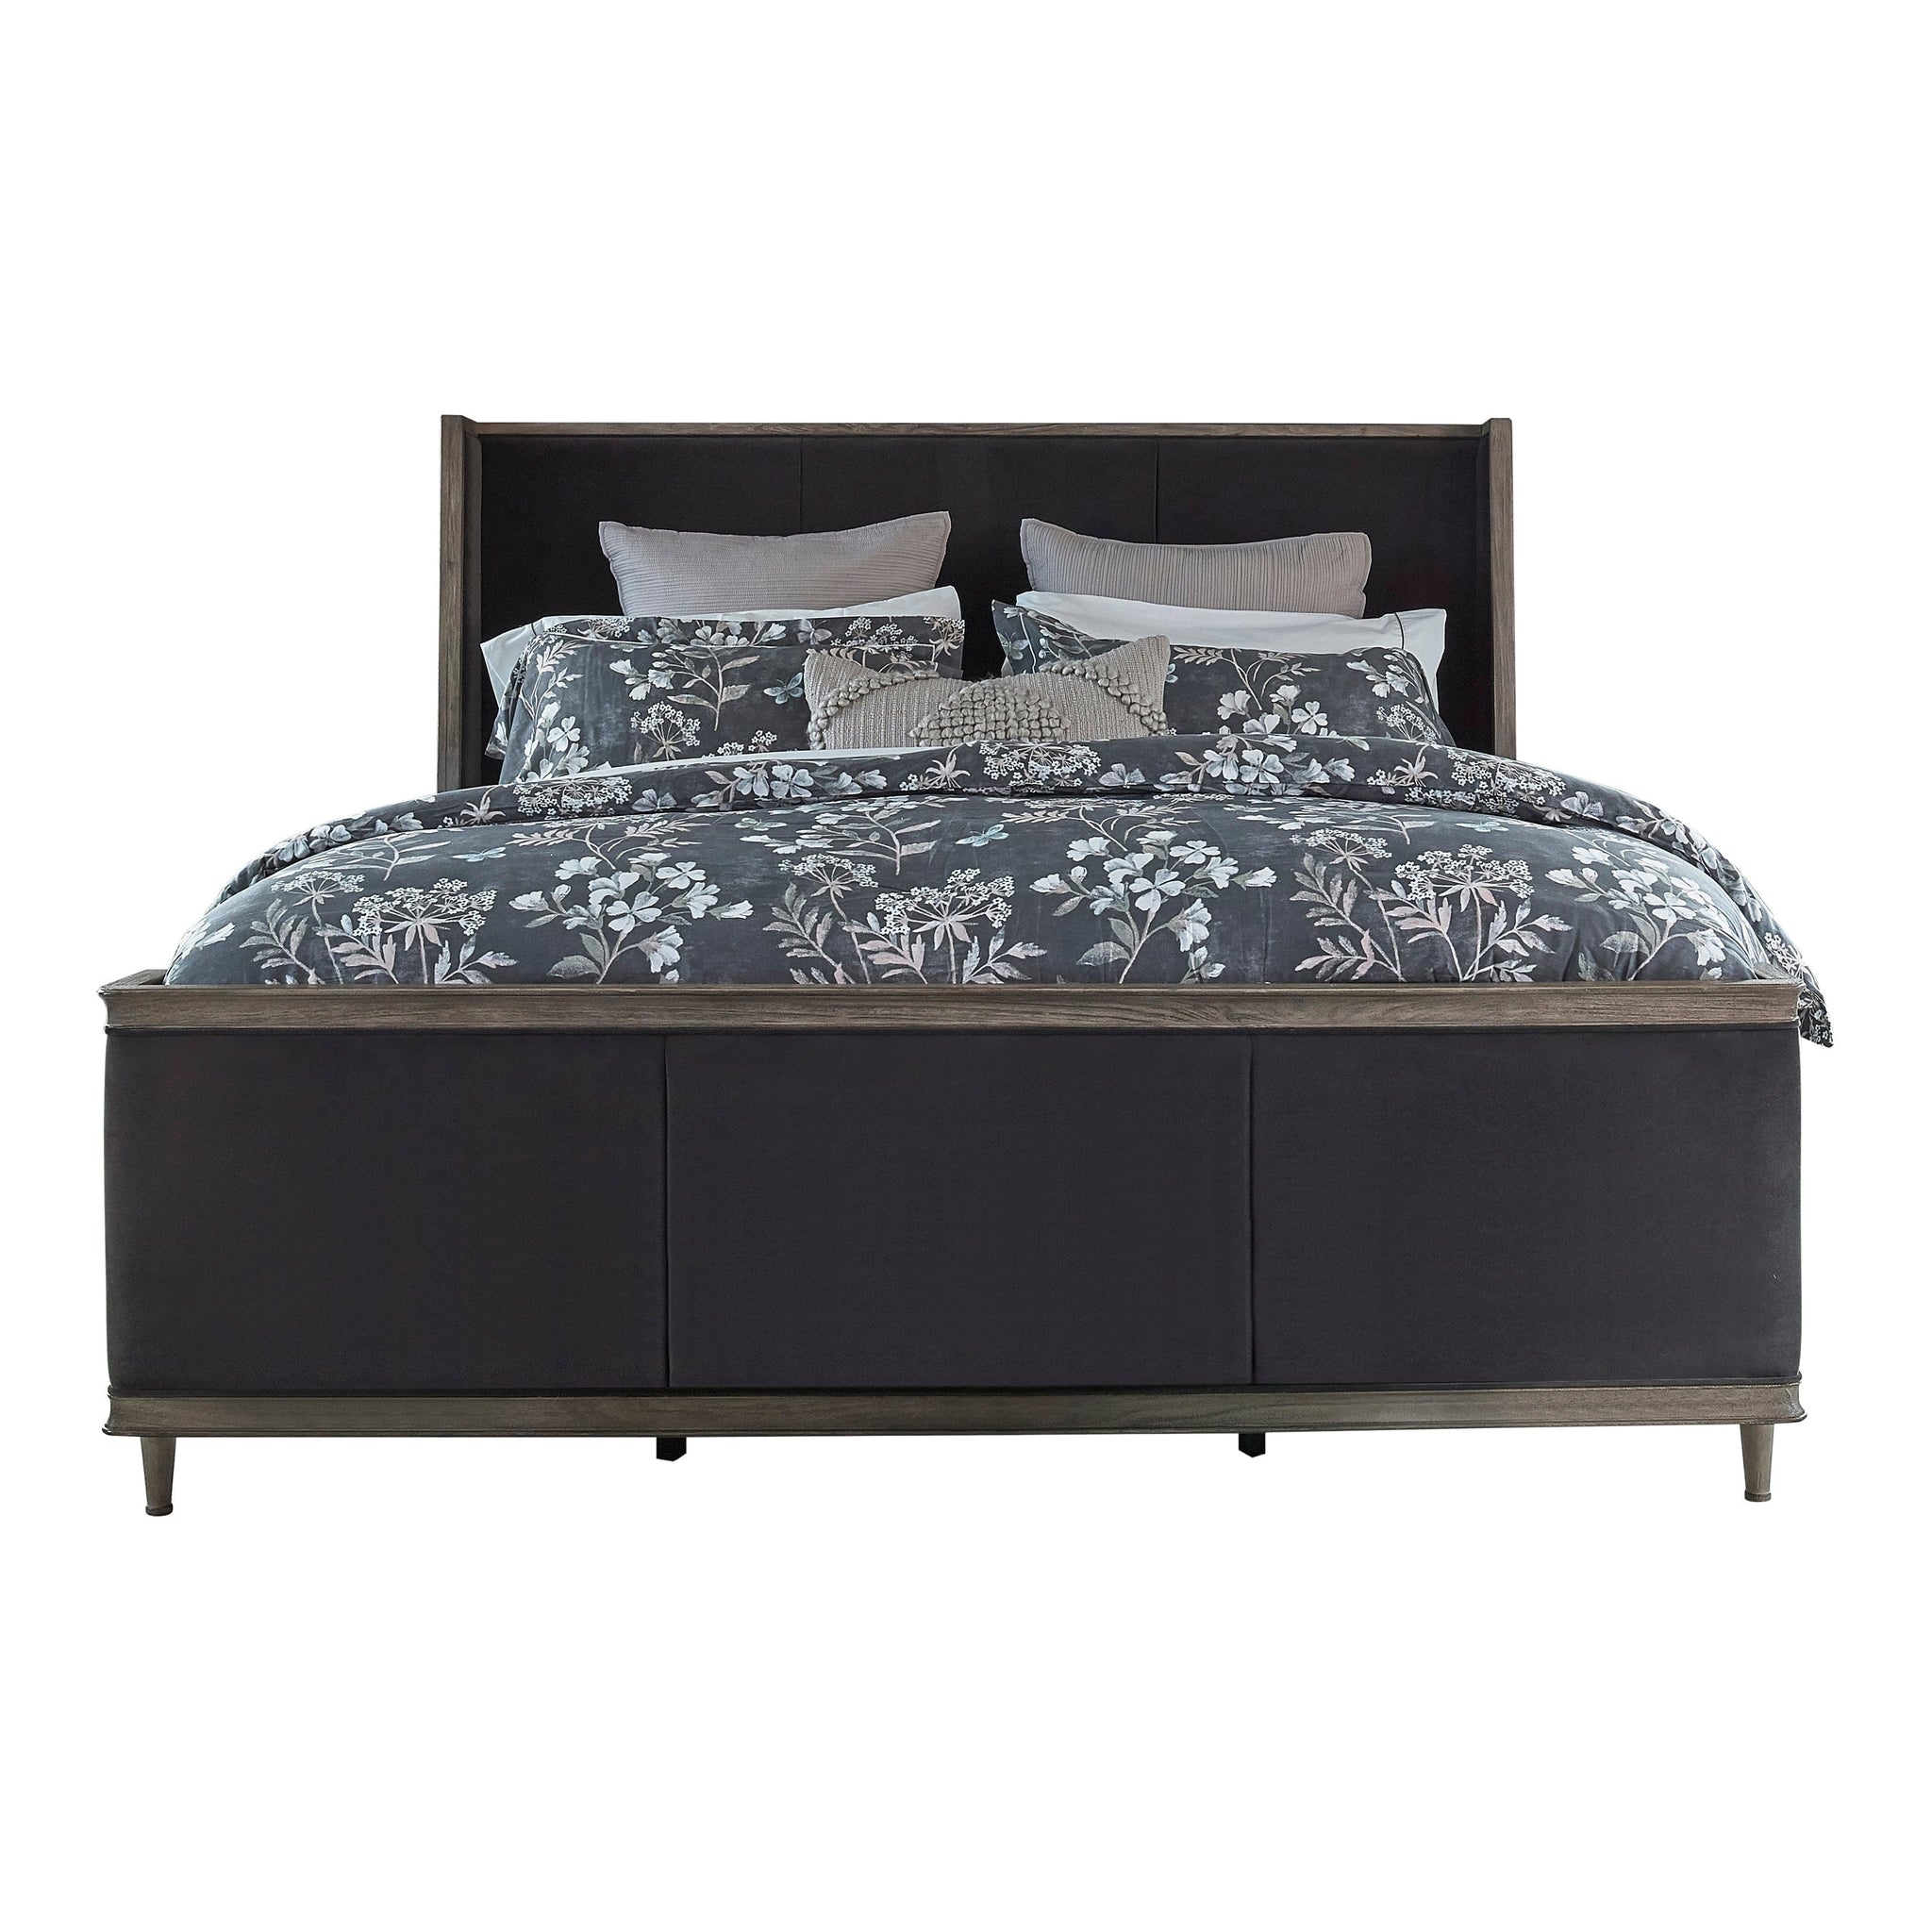 Alderwood Queen Upholstered Panel Bed Charcoal Grey SKU: 223121Q